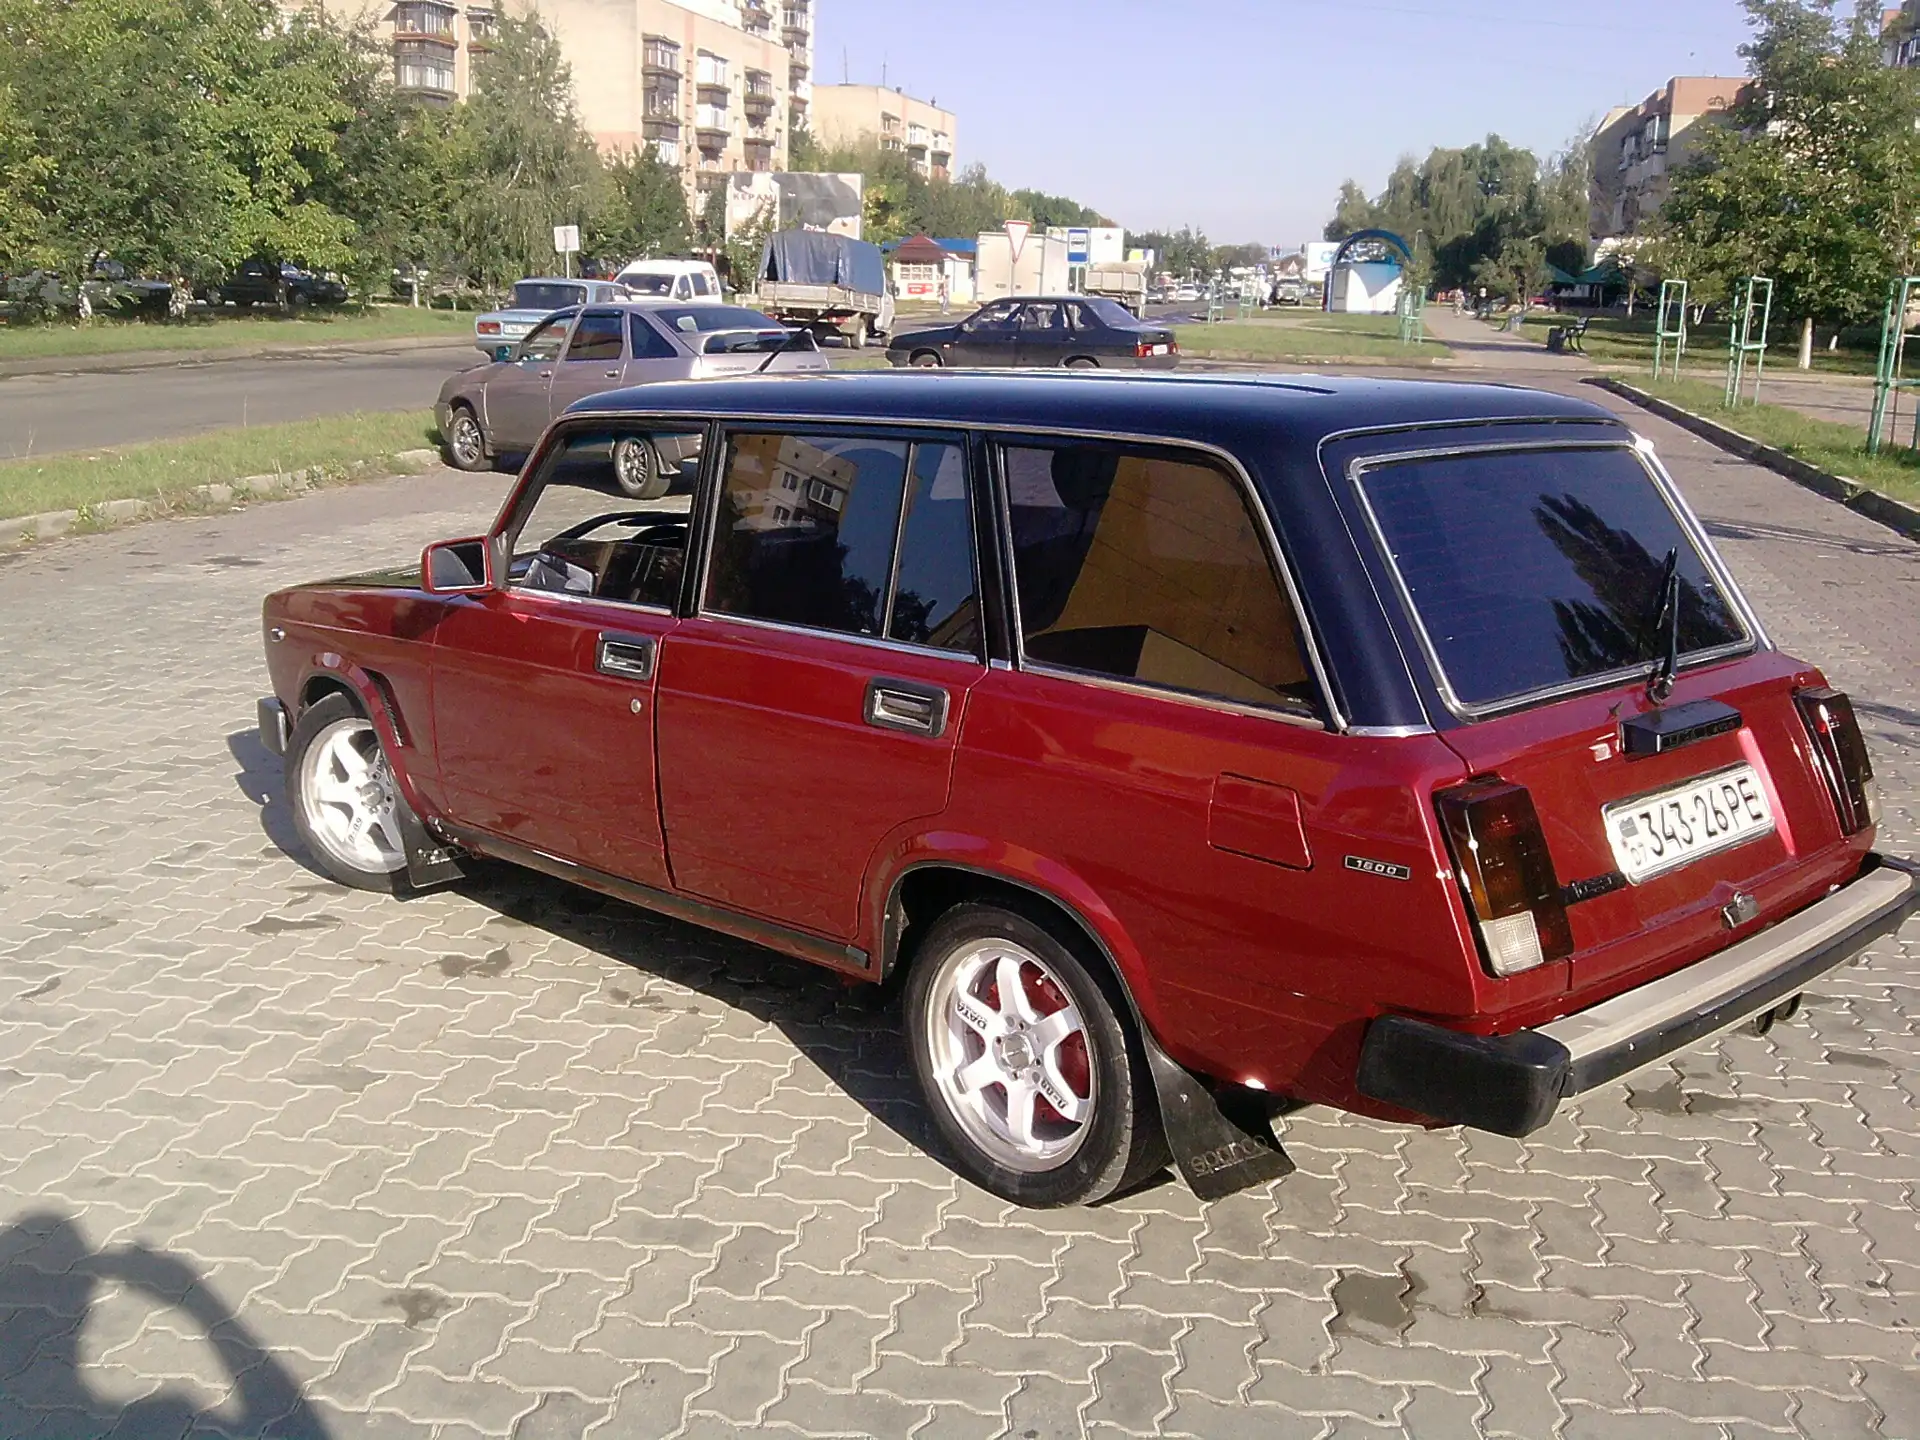 Фотогалерея автомобилей, Дагестанский тюнинг